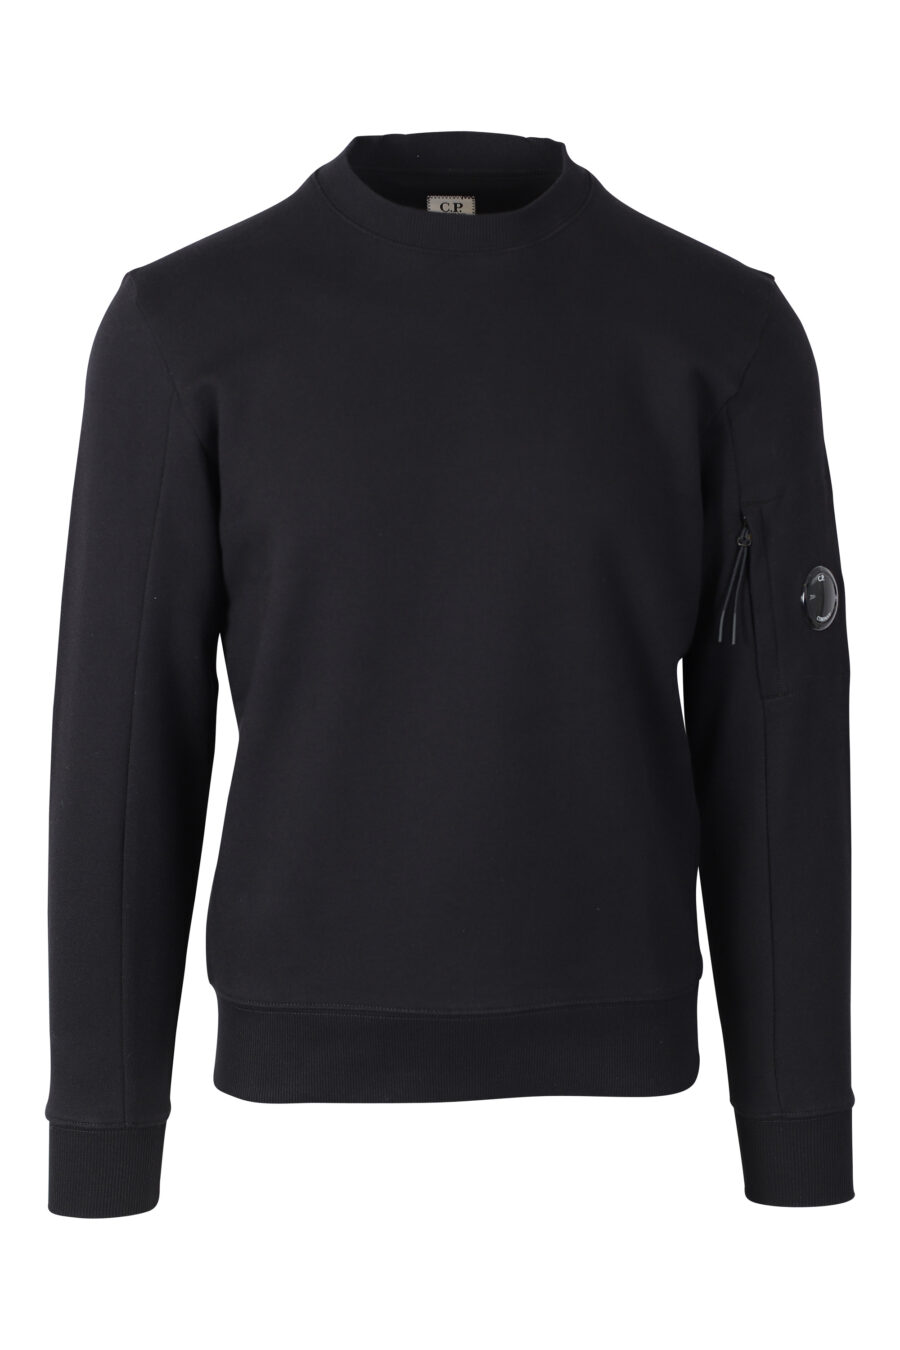 Schwarzes Sweatshirt mit rundem Mini-Logo an der Seite - IMG 2374